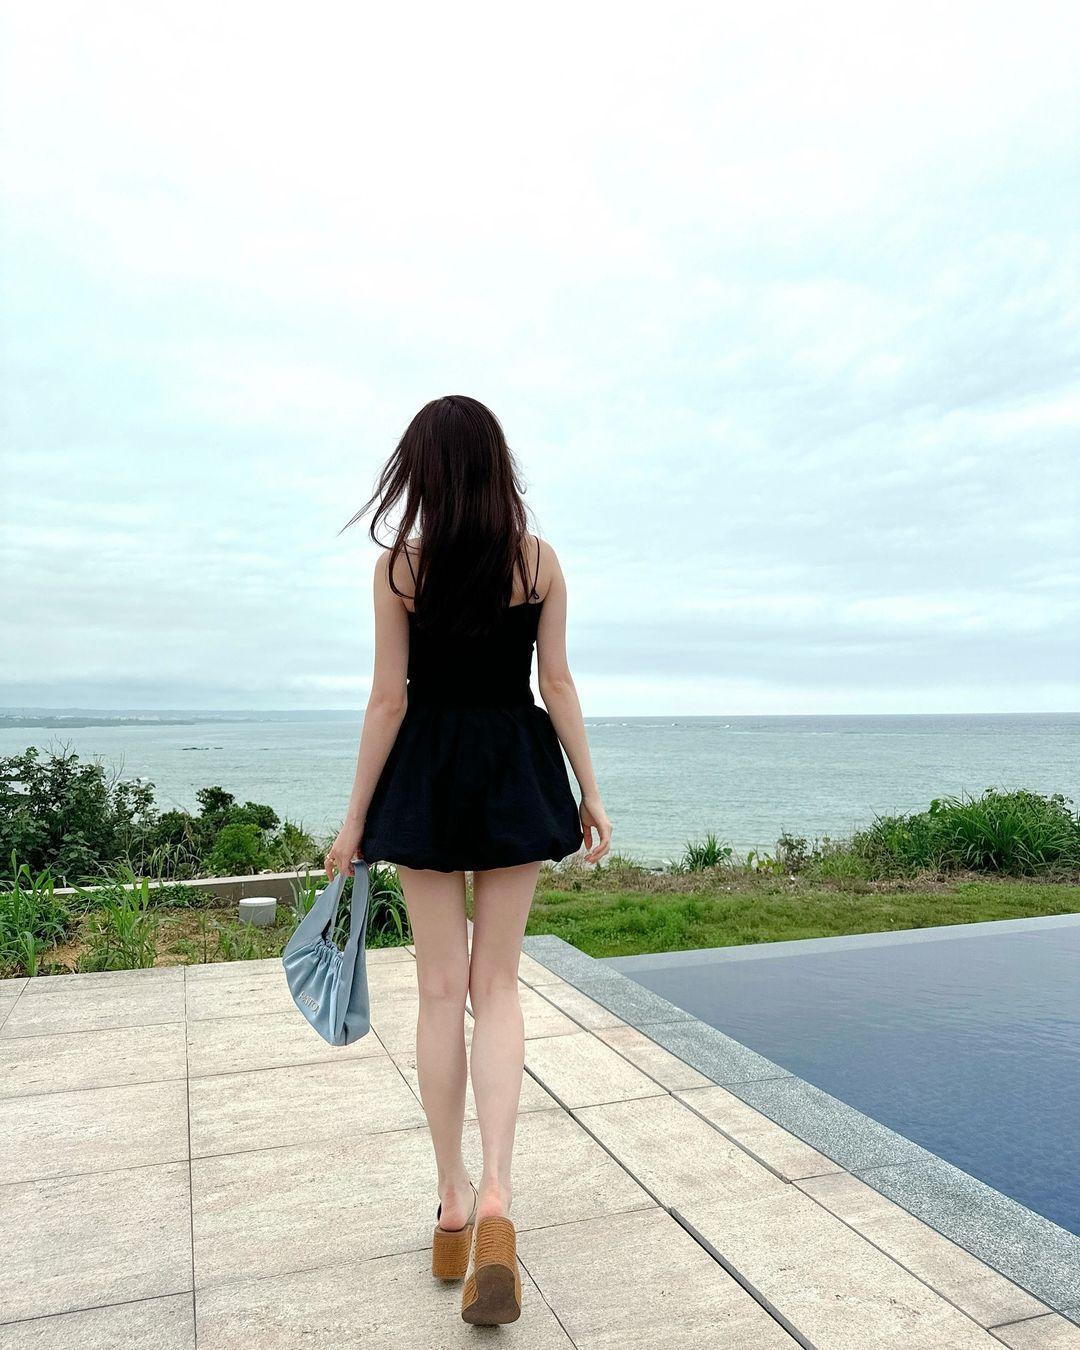 久間田琳加  沖縄の海ではしゃぐショット公開　肩を出したミニスカワンピ姿に「スタイル良すぎる」と驚きの声